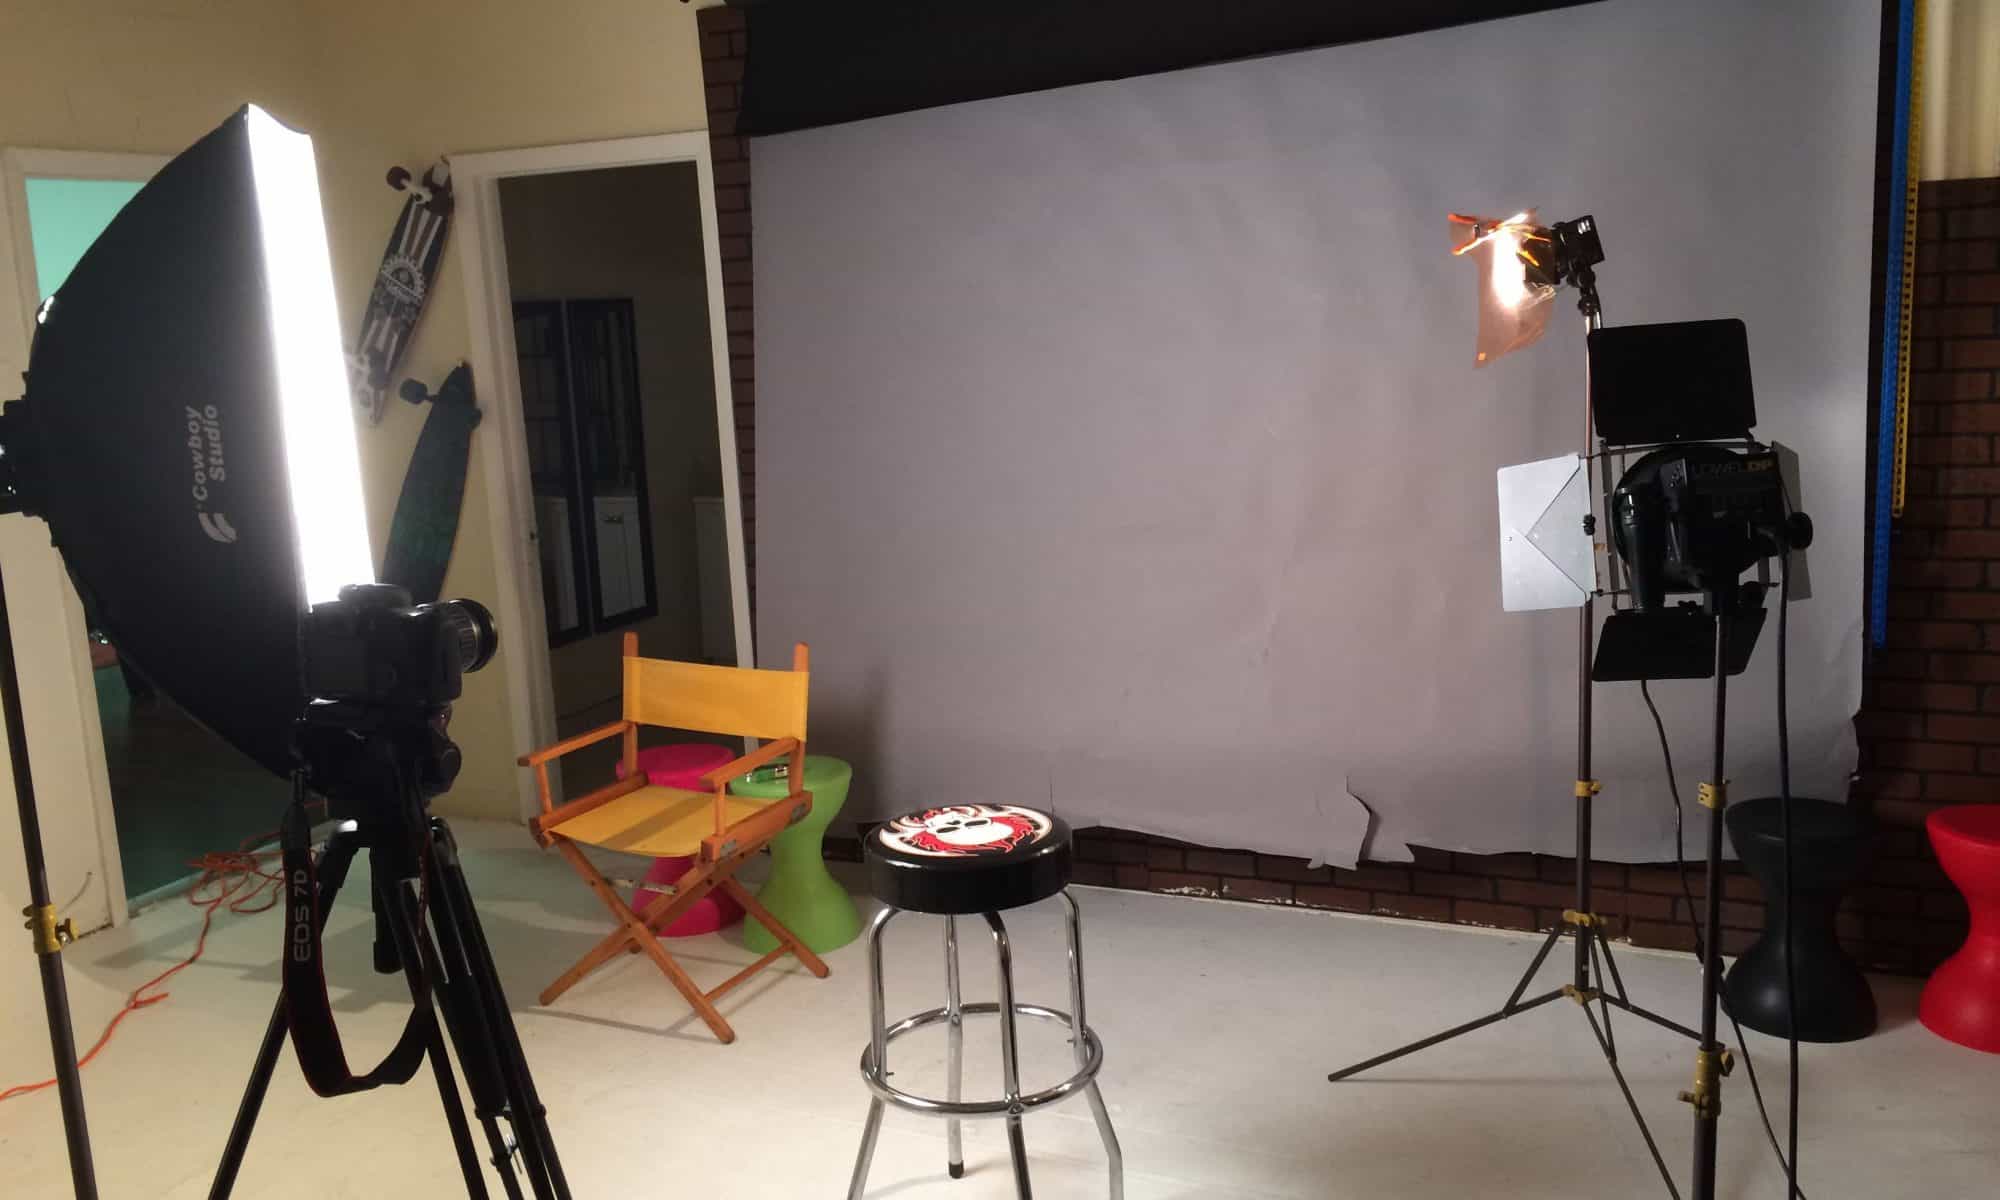 studio setup for shoot